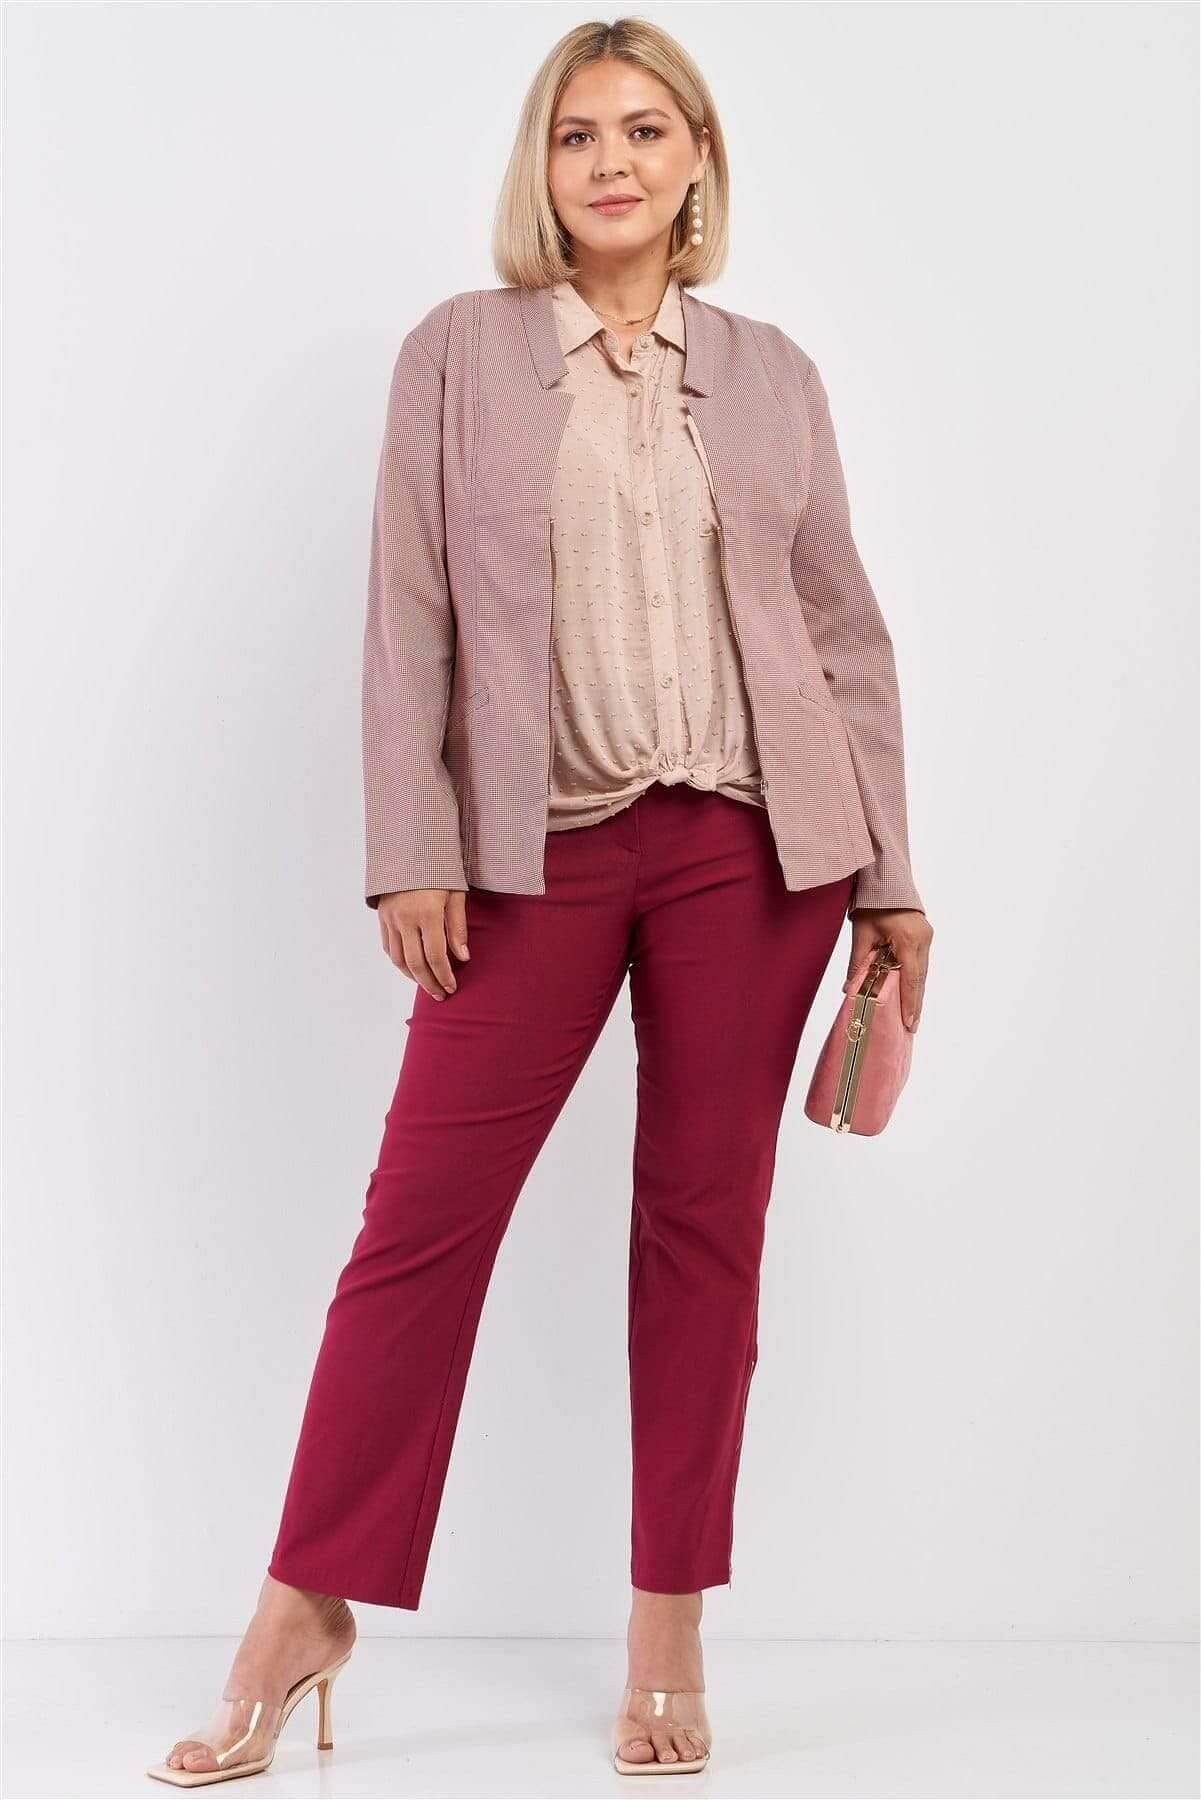 Blush Plus Size Long Sleeve Jacket - Shopping Therapy, LLC Jacket